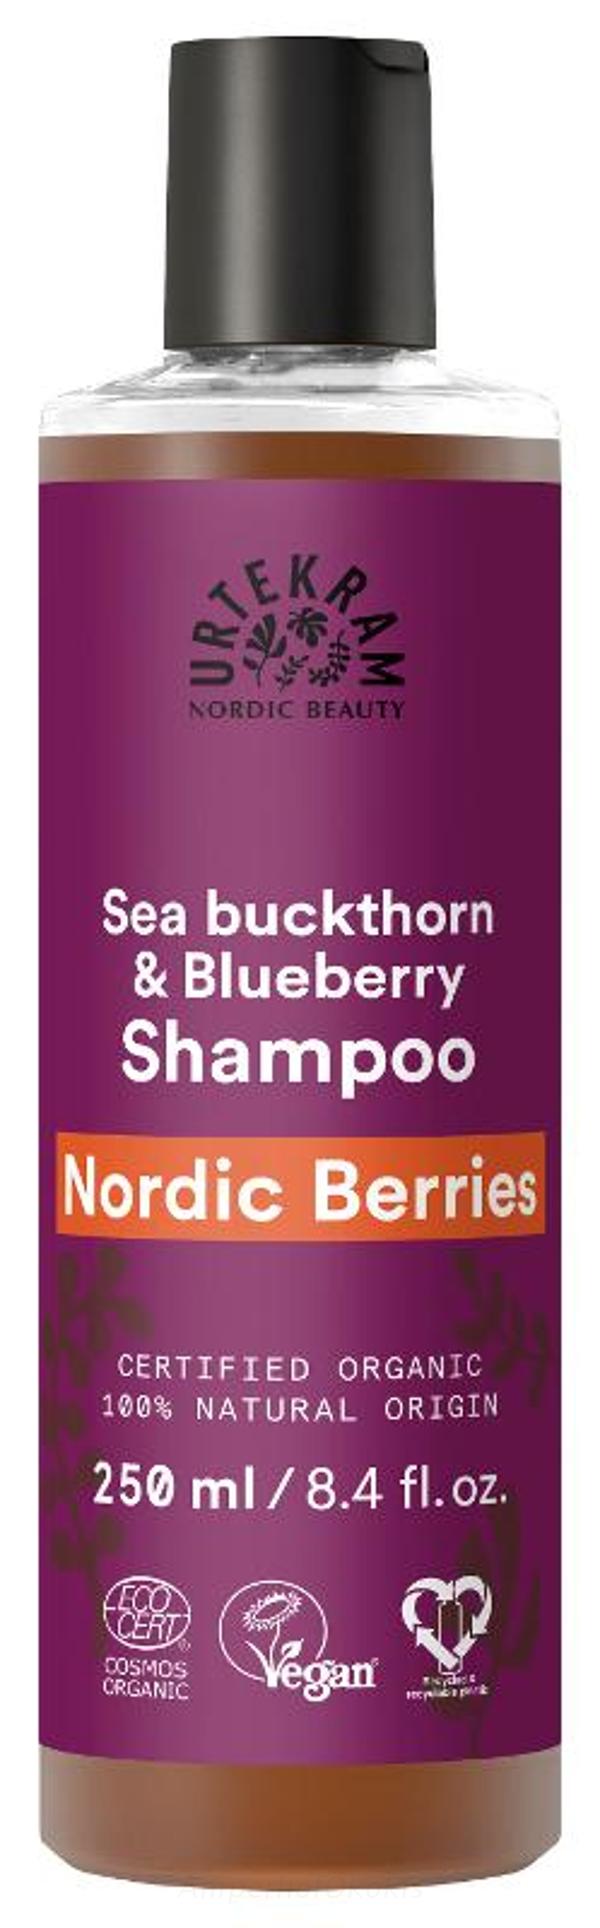 Produktfoto zu Shampoo Nordic Beeries 250 ml